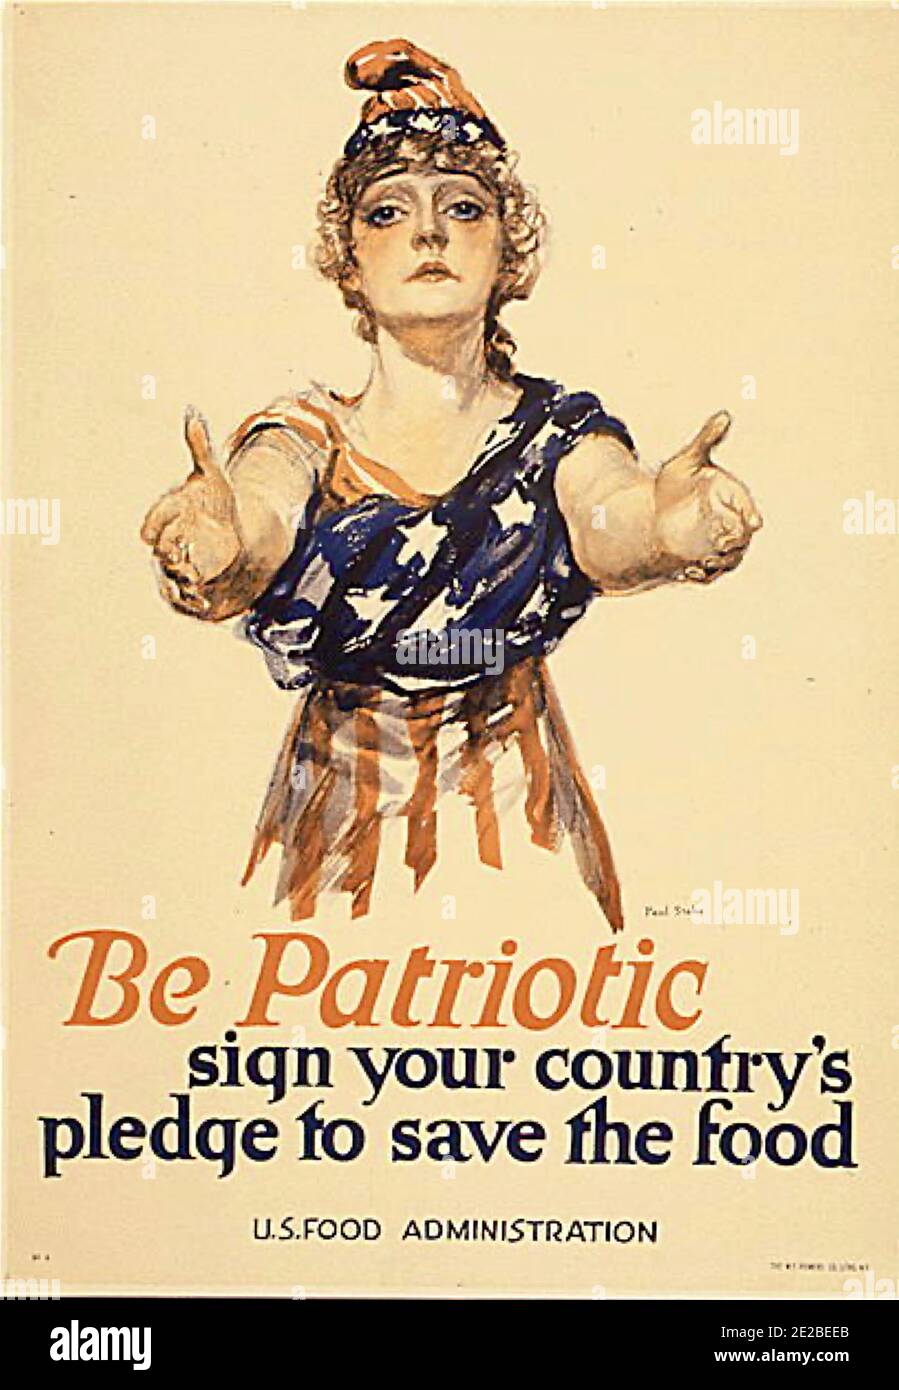 Sea Patriótico - firme el compromiso de su país para salvar la comida. Cartel de información pública del gobierno estadounidense. Foto de stock